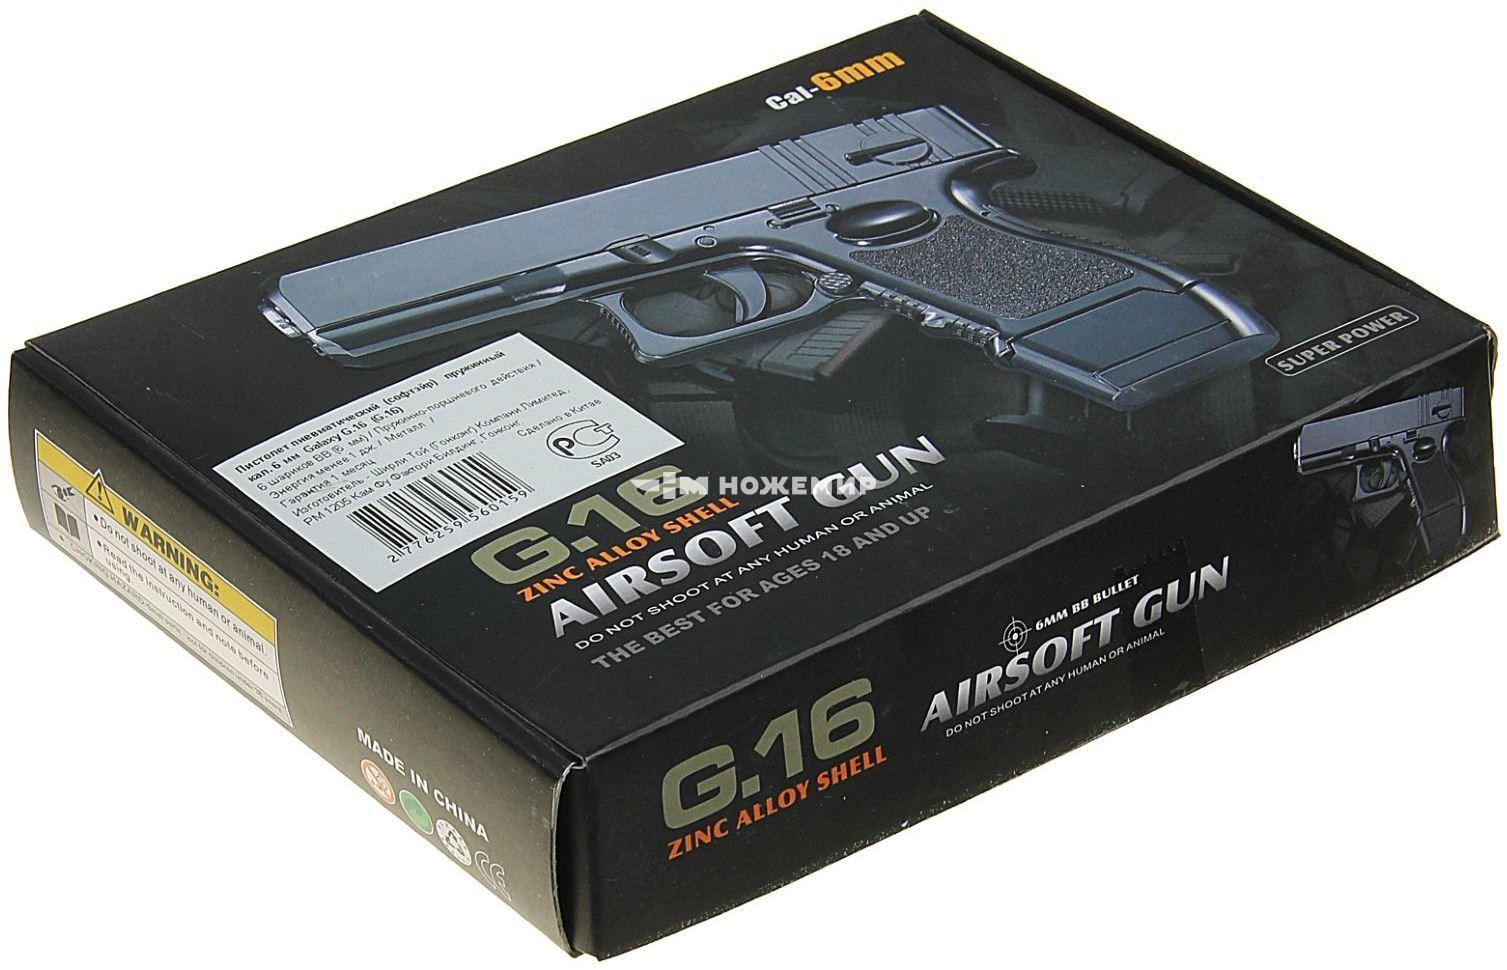 Страйкбольный пистолет пружинный Glock 17 мини Galaxy G16